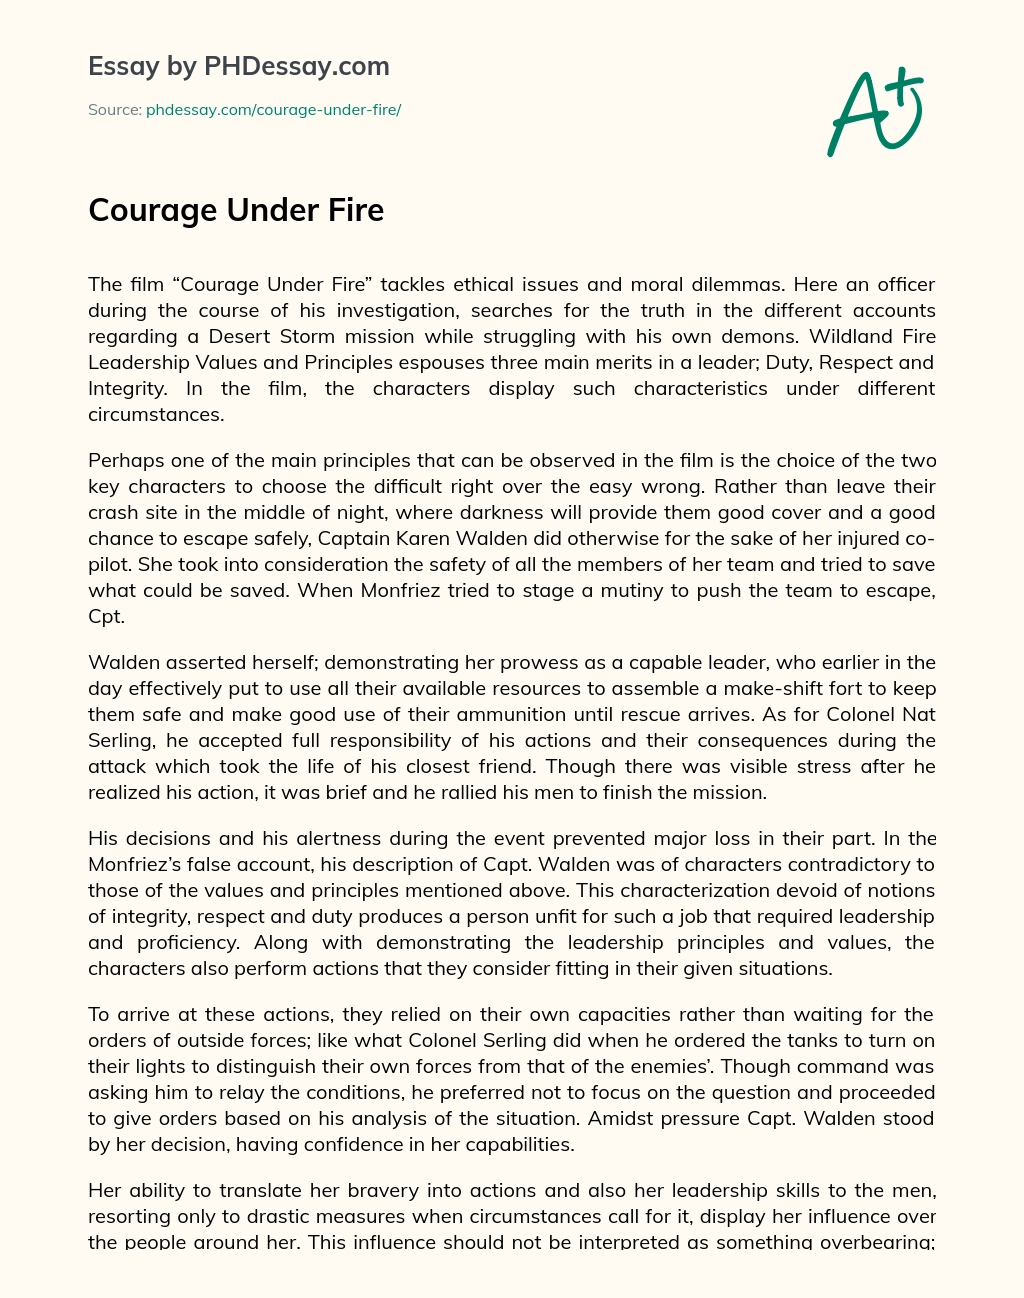 Courage Under Fire essay